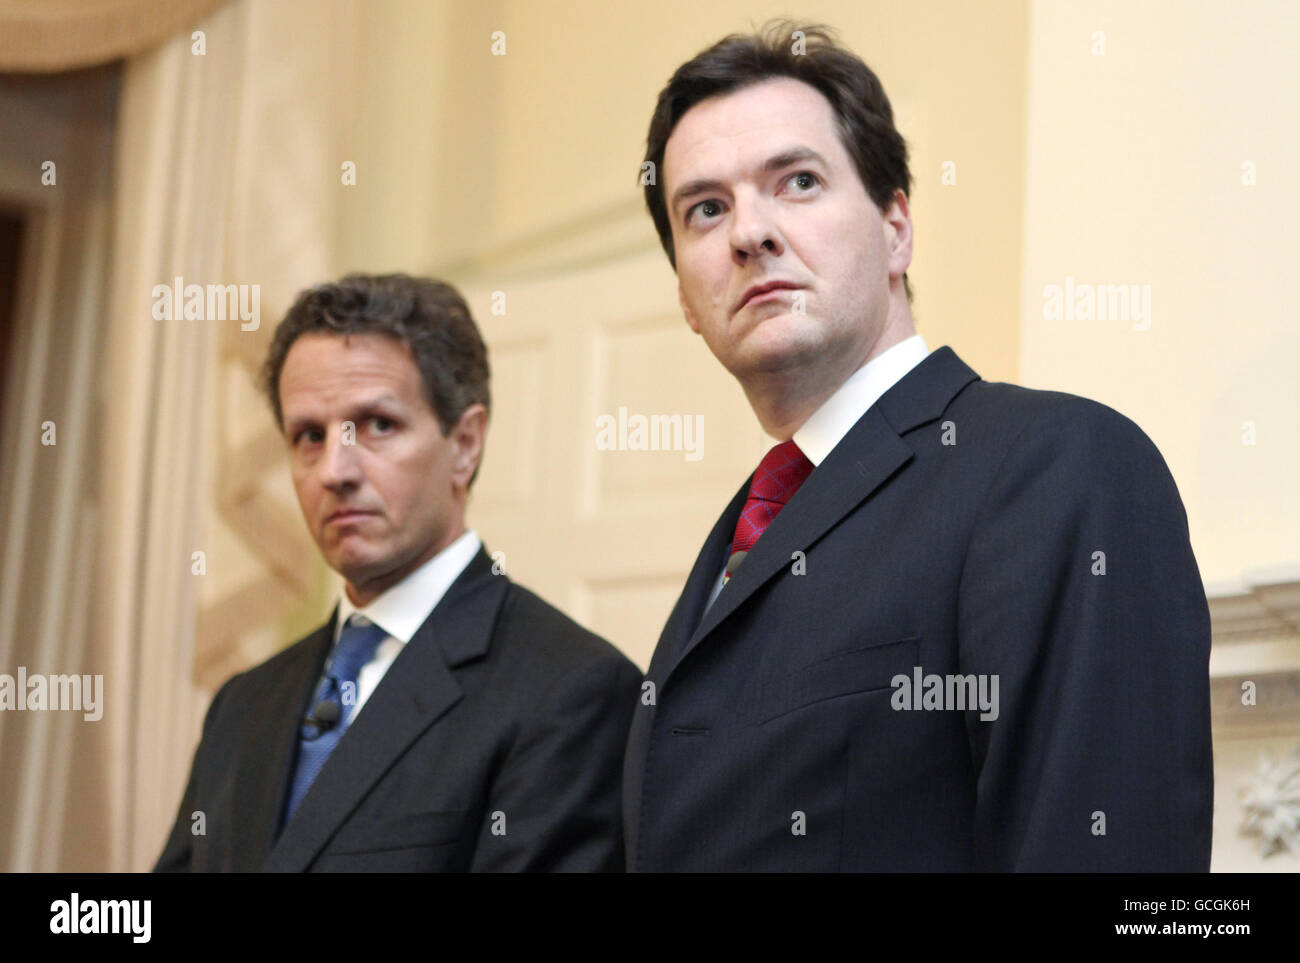 Timothy Geithner, segretario del Tesoro degli Stati Uniti, si trova con George Osborne, cancelliere britannico dello scacchiere, durante una conferenza stampa congiunta al 11 Downing Street, a Londra, Regno Unito Foto Stock